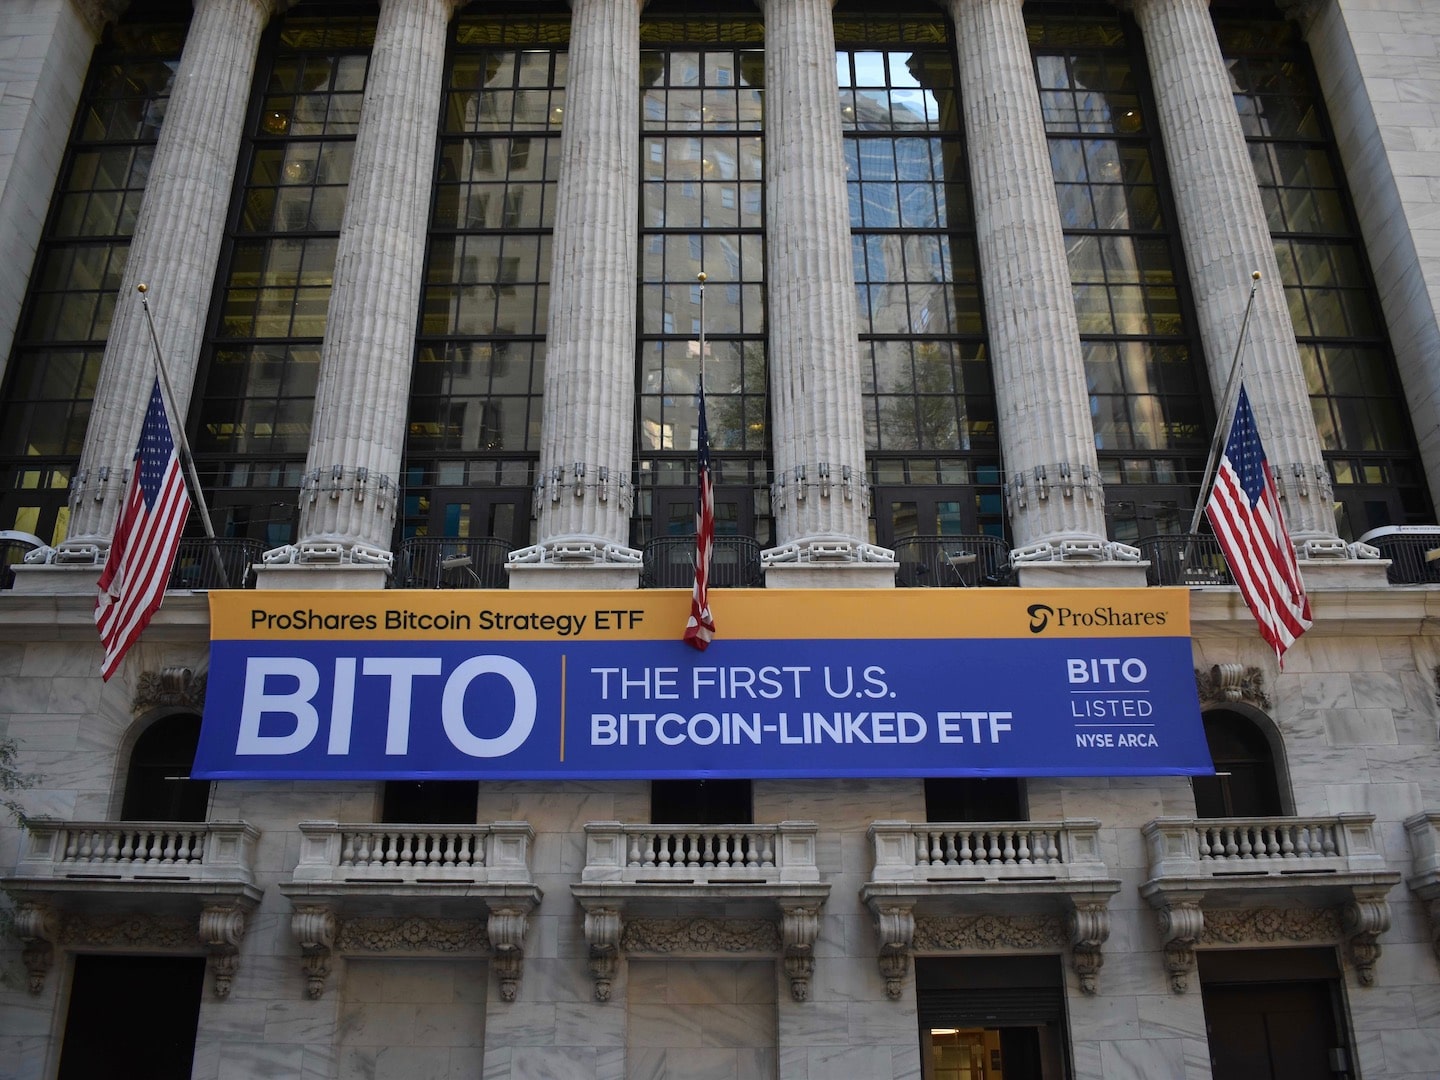 ProShares Bitcoin Strategy ETF（ティッカー$BITO）が取引を開始した火曜日のニューヨーク証券取引所。(Cheyenne Ligon)